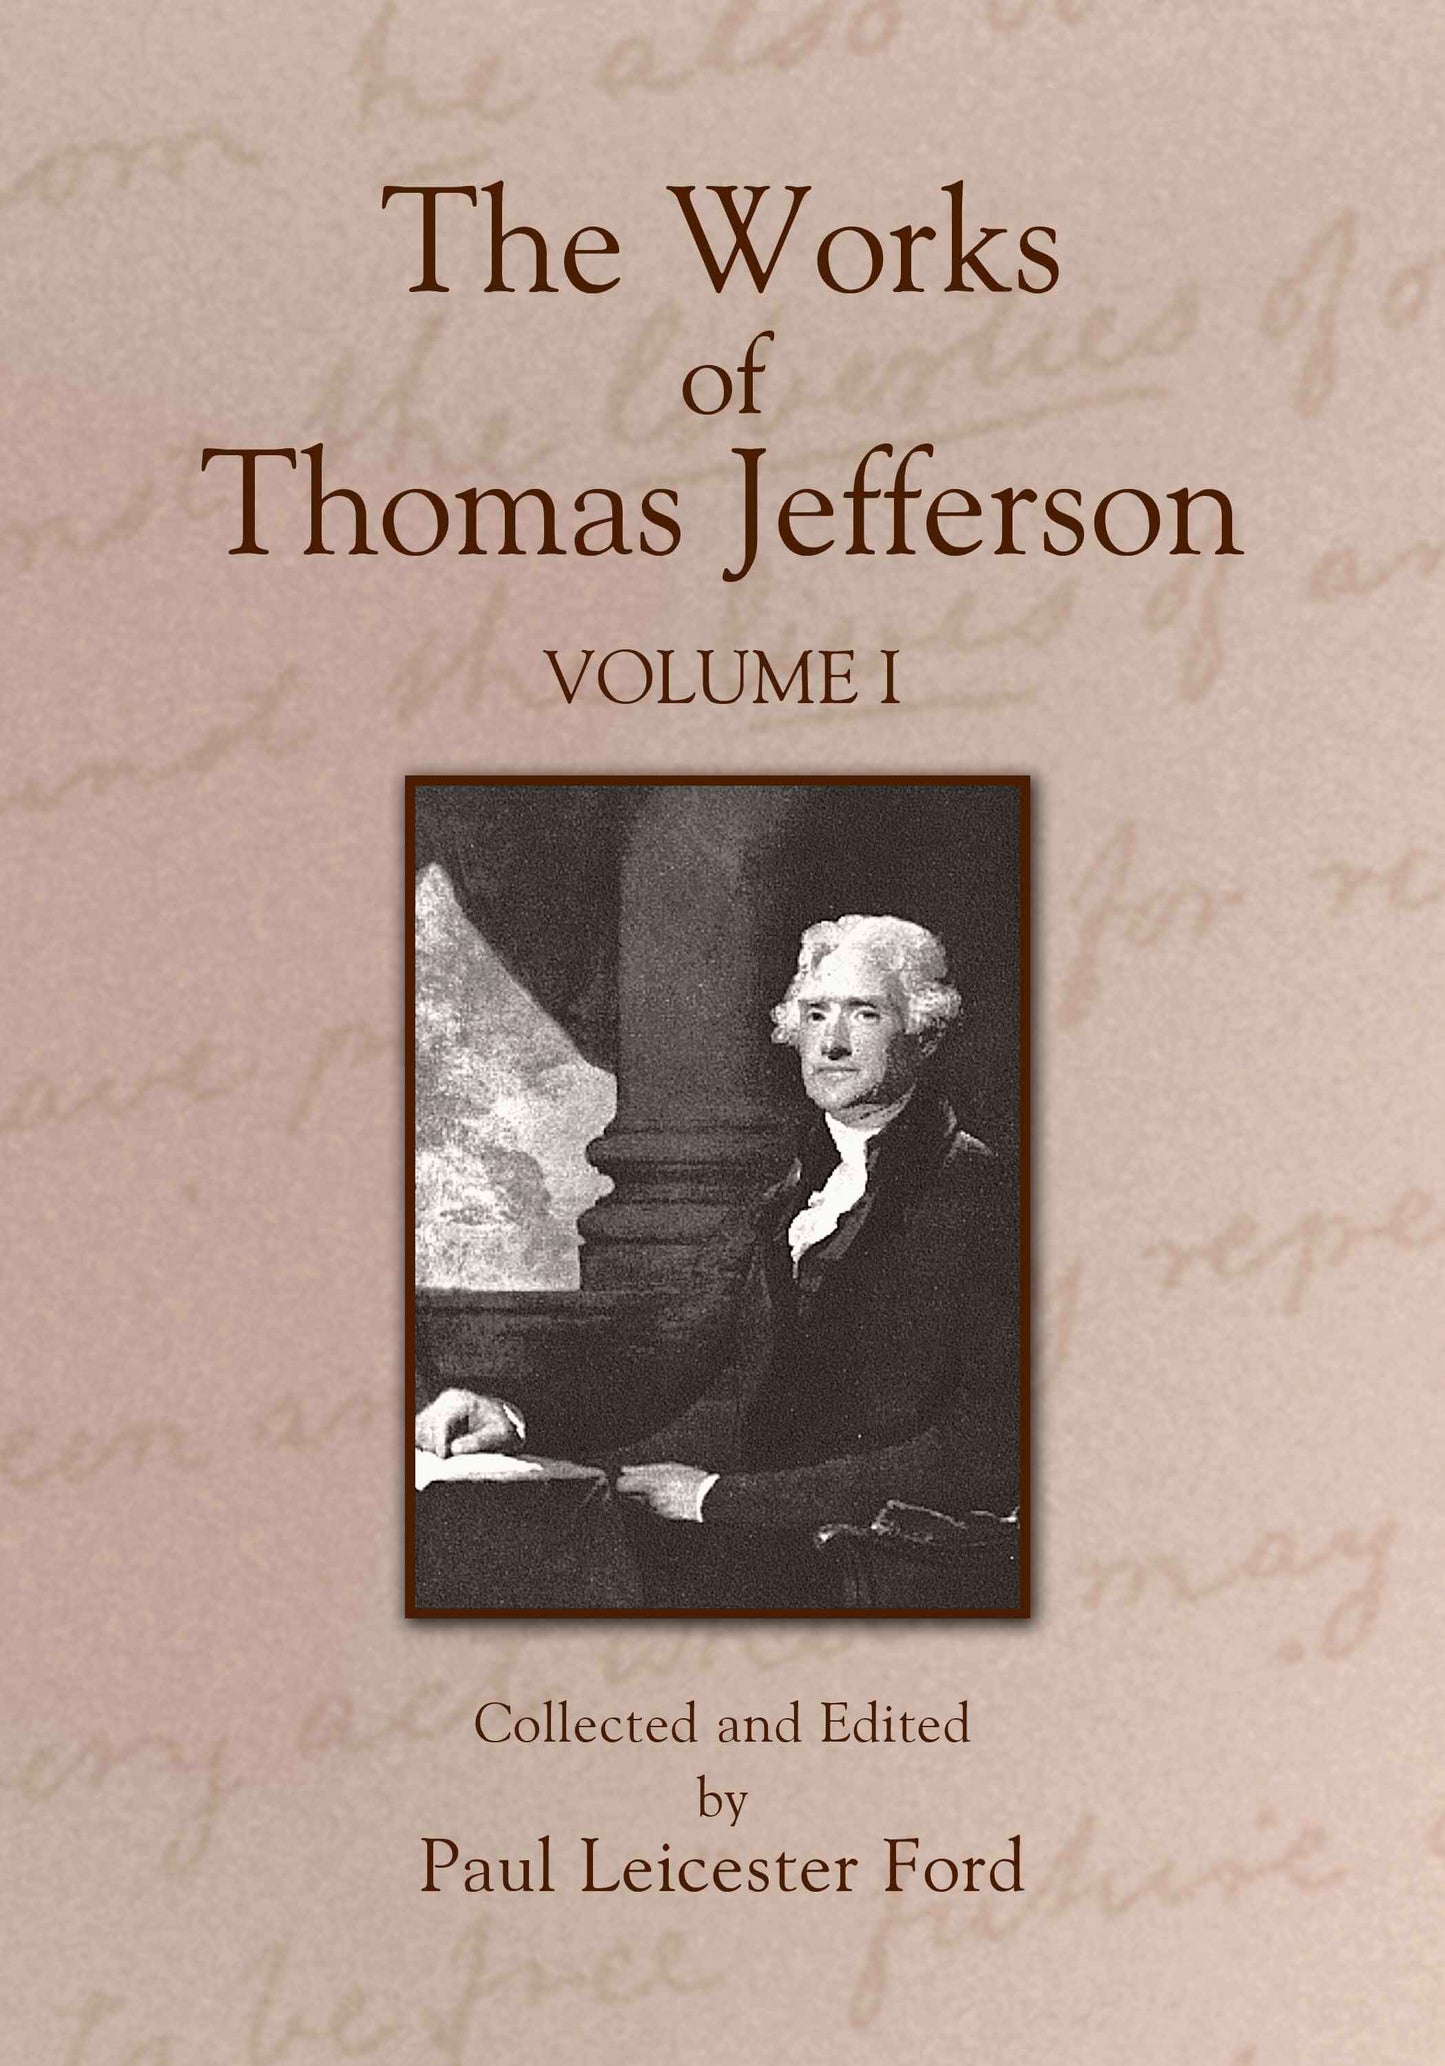 The Works of Thomas Jefferson: Volume I